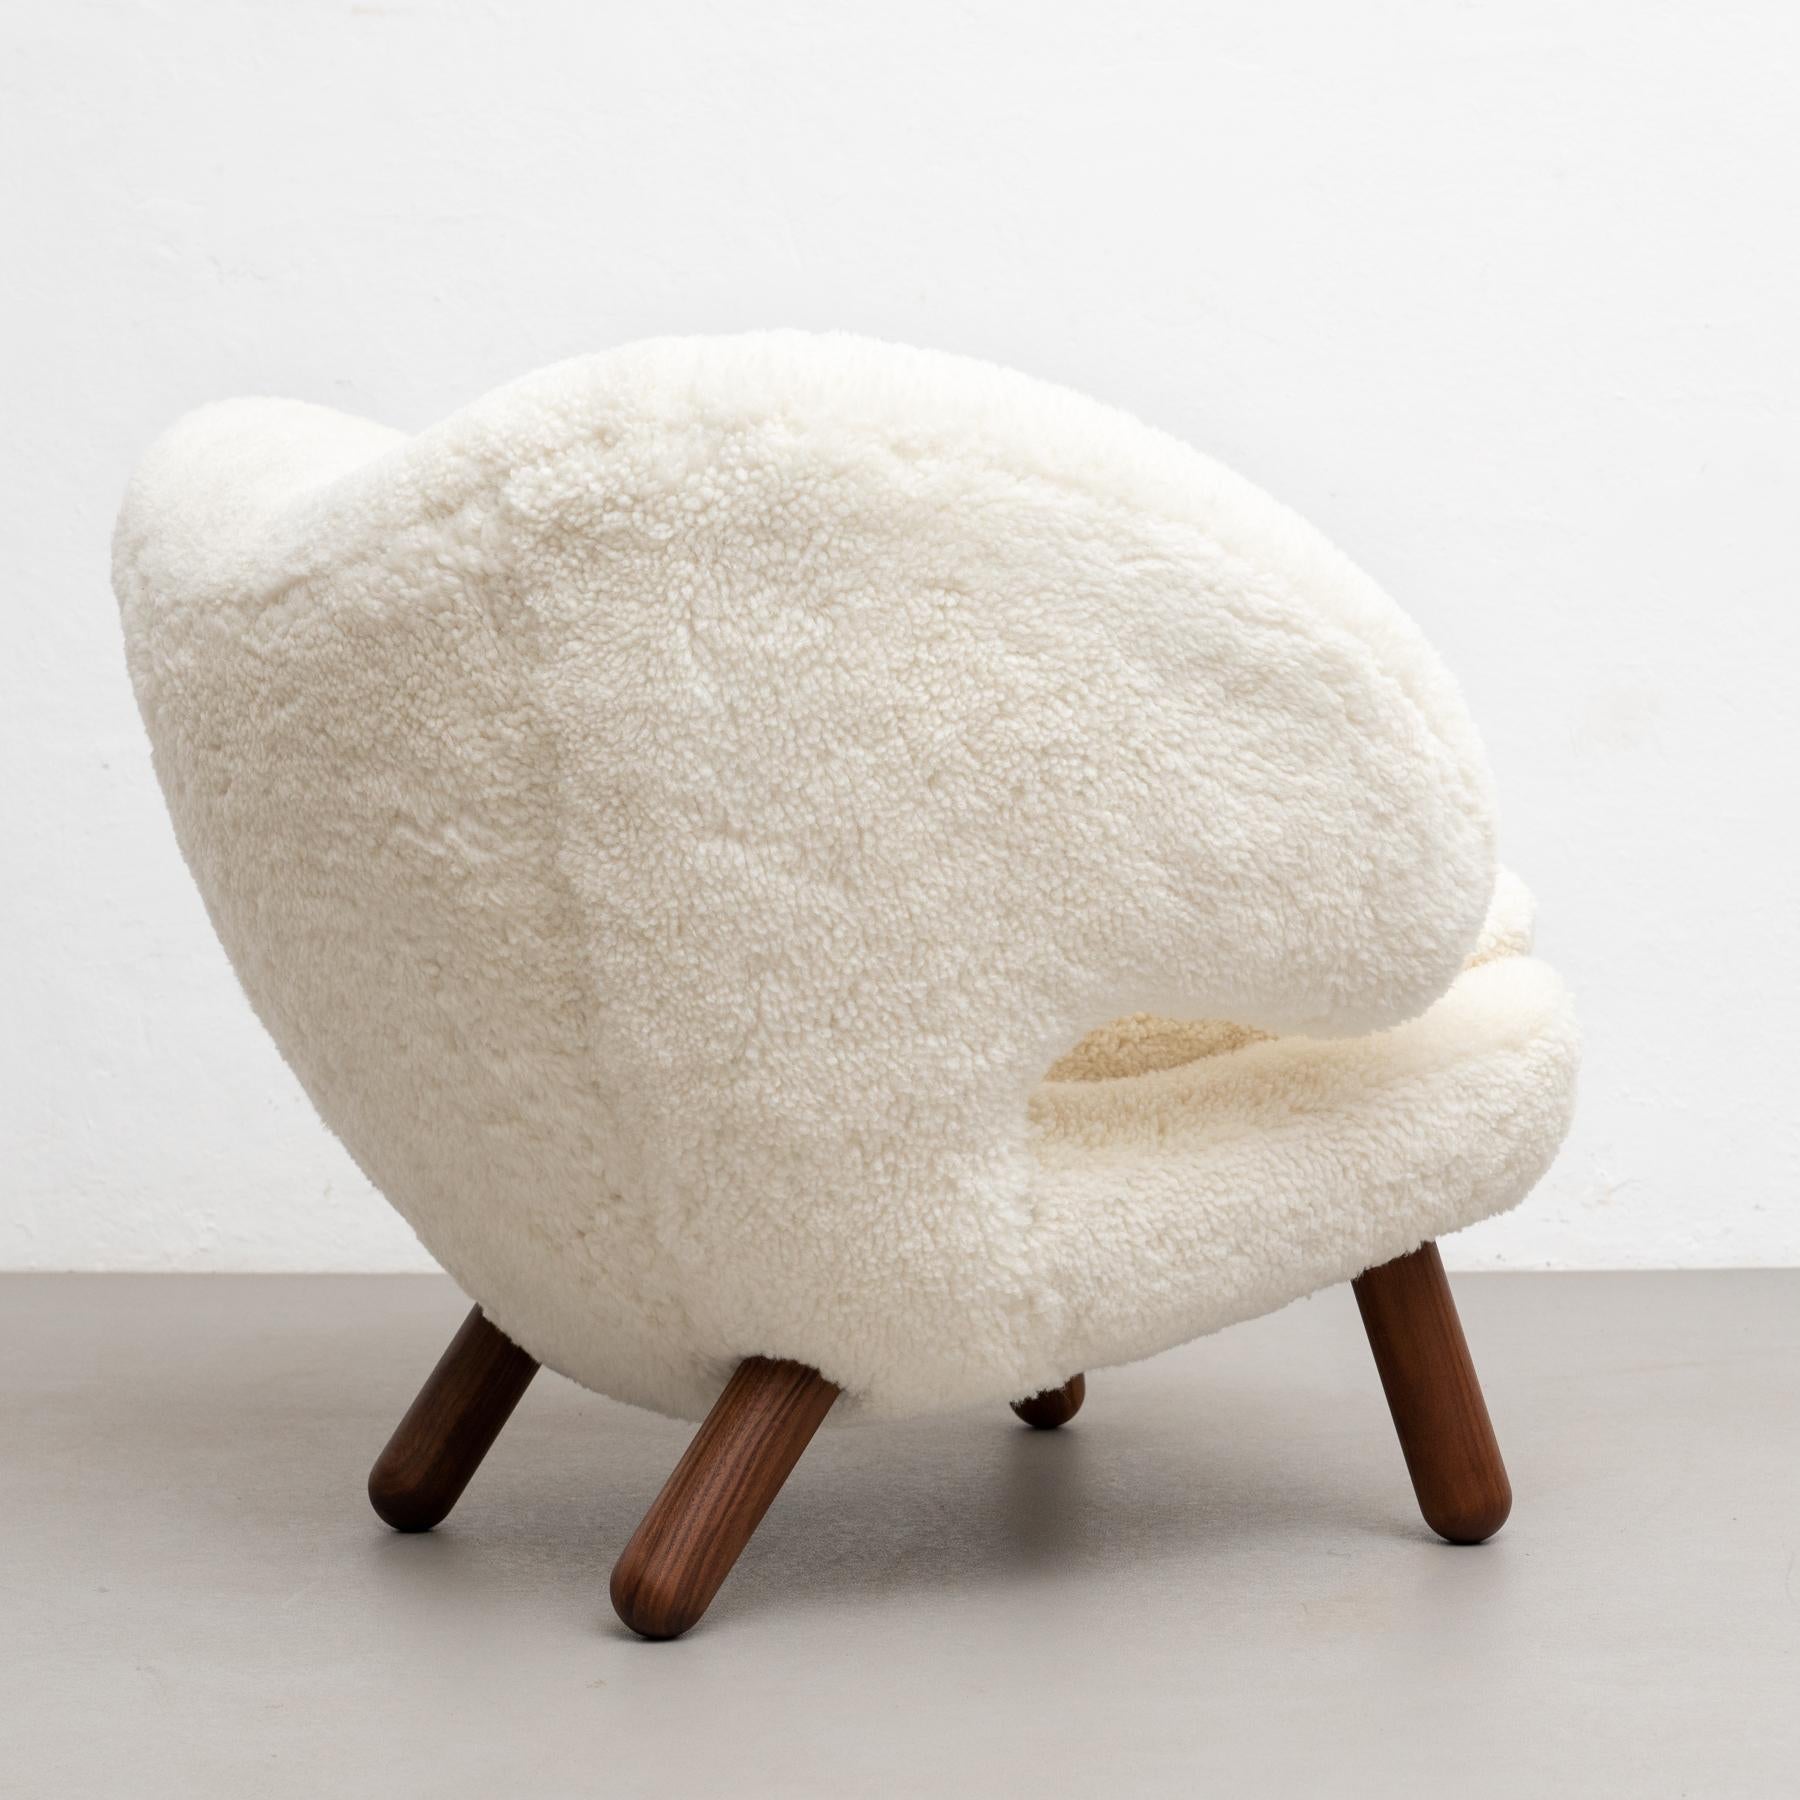 Danish Finn Juhl Pelican Chair Upholstered in Offwhite Sheepskin For Sale